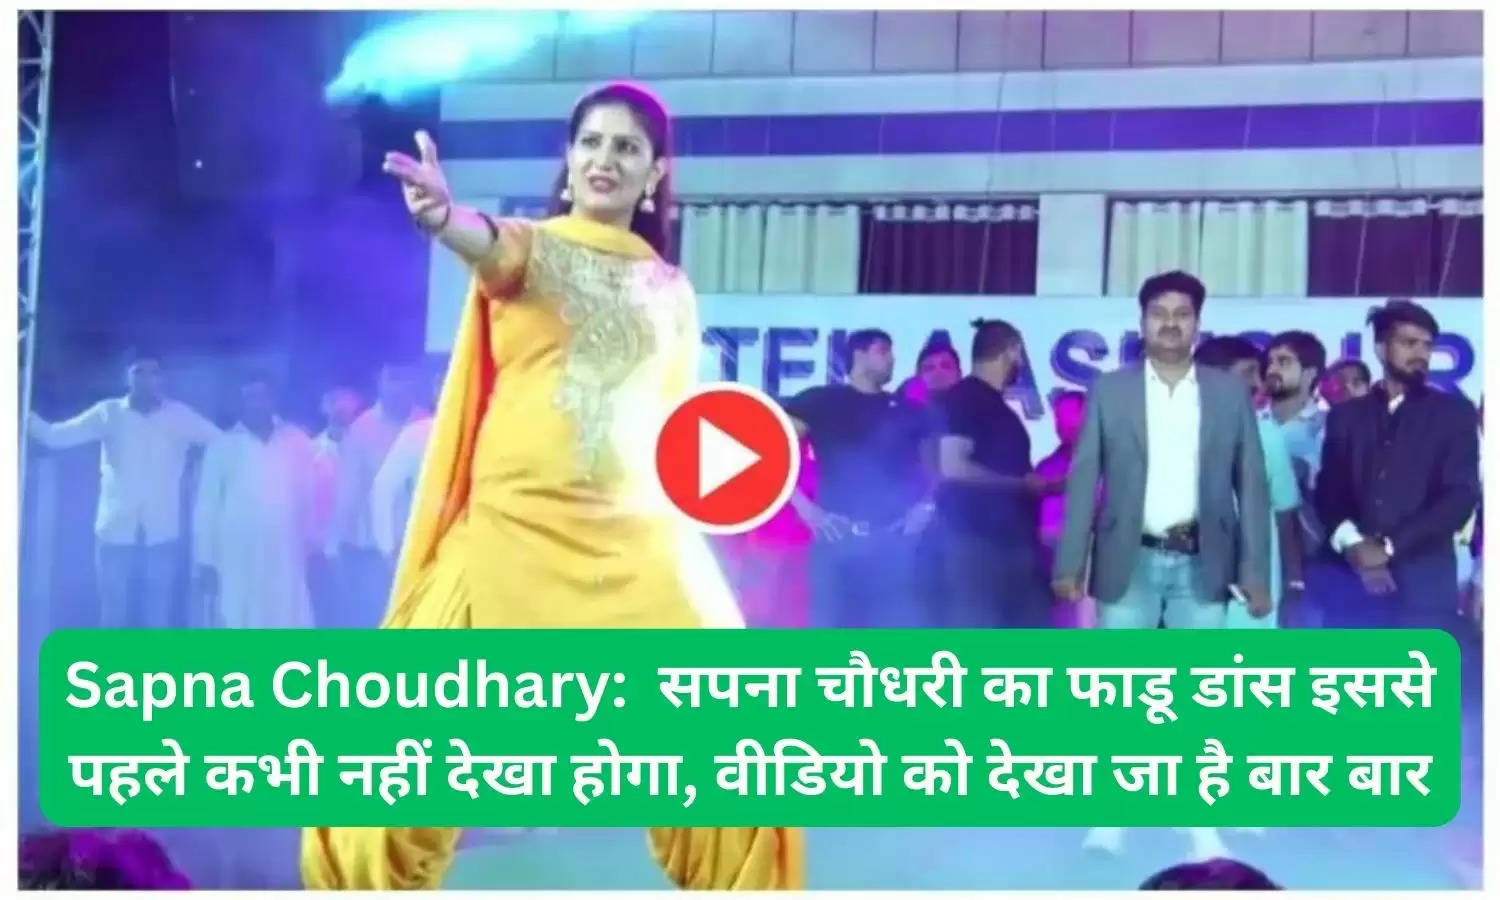 Sapna Choudhary:  सपना चौधरी का फाडू डांस इससे पहले कभी नहीं देखा होगा, वीडियो को देखा जा है बार बार